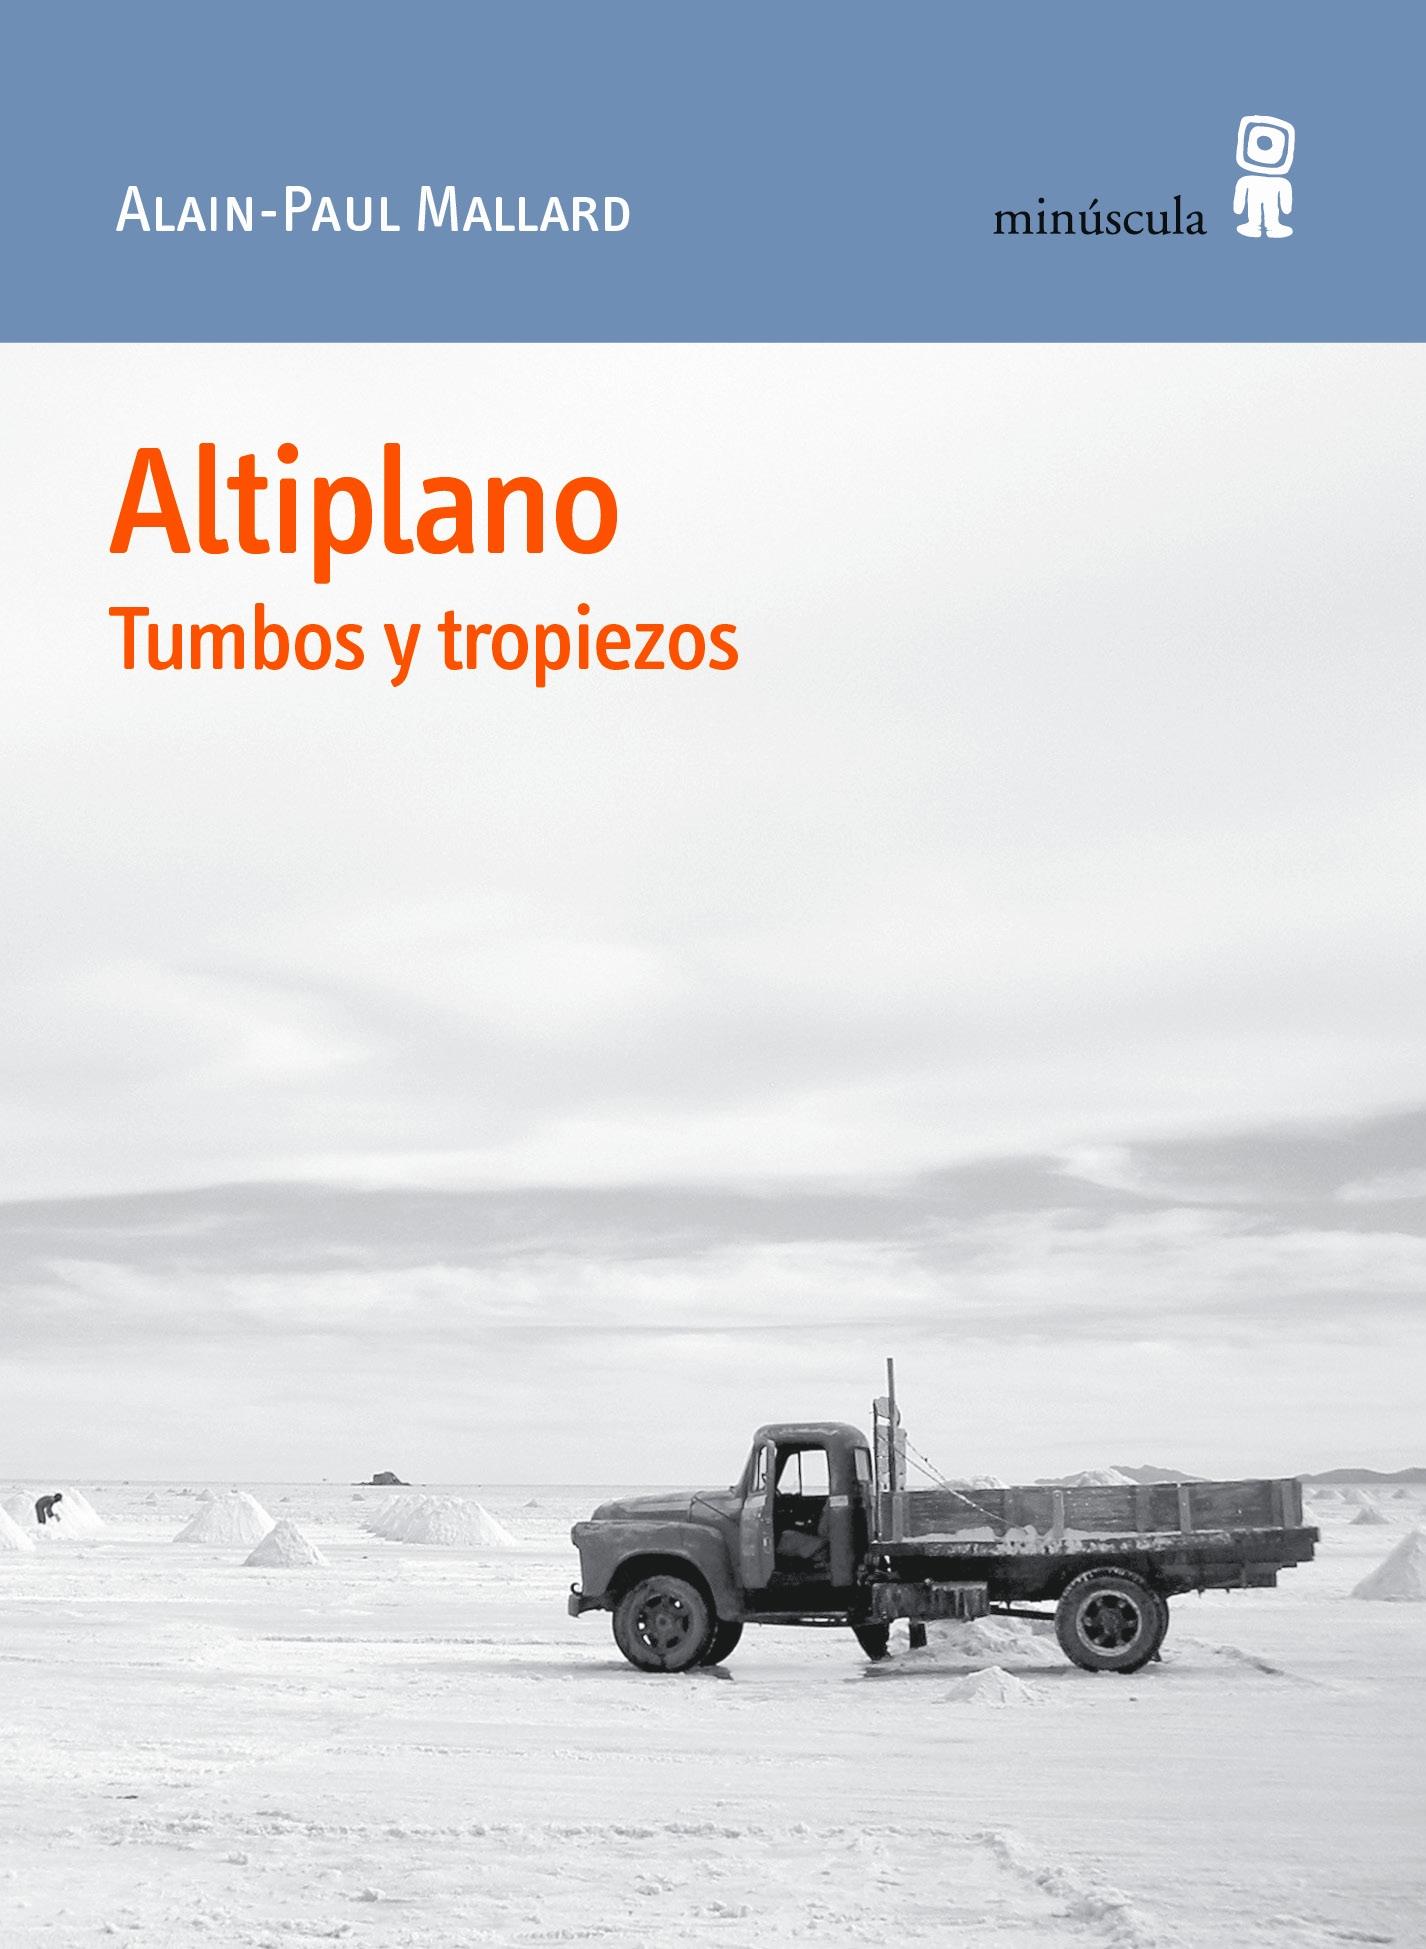 Altiplano "Tumbos y tropiezos"